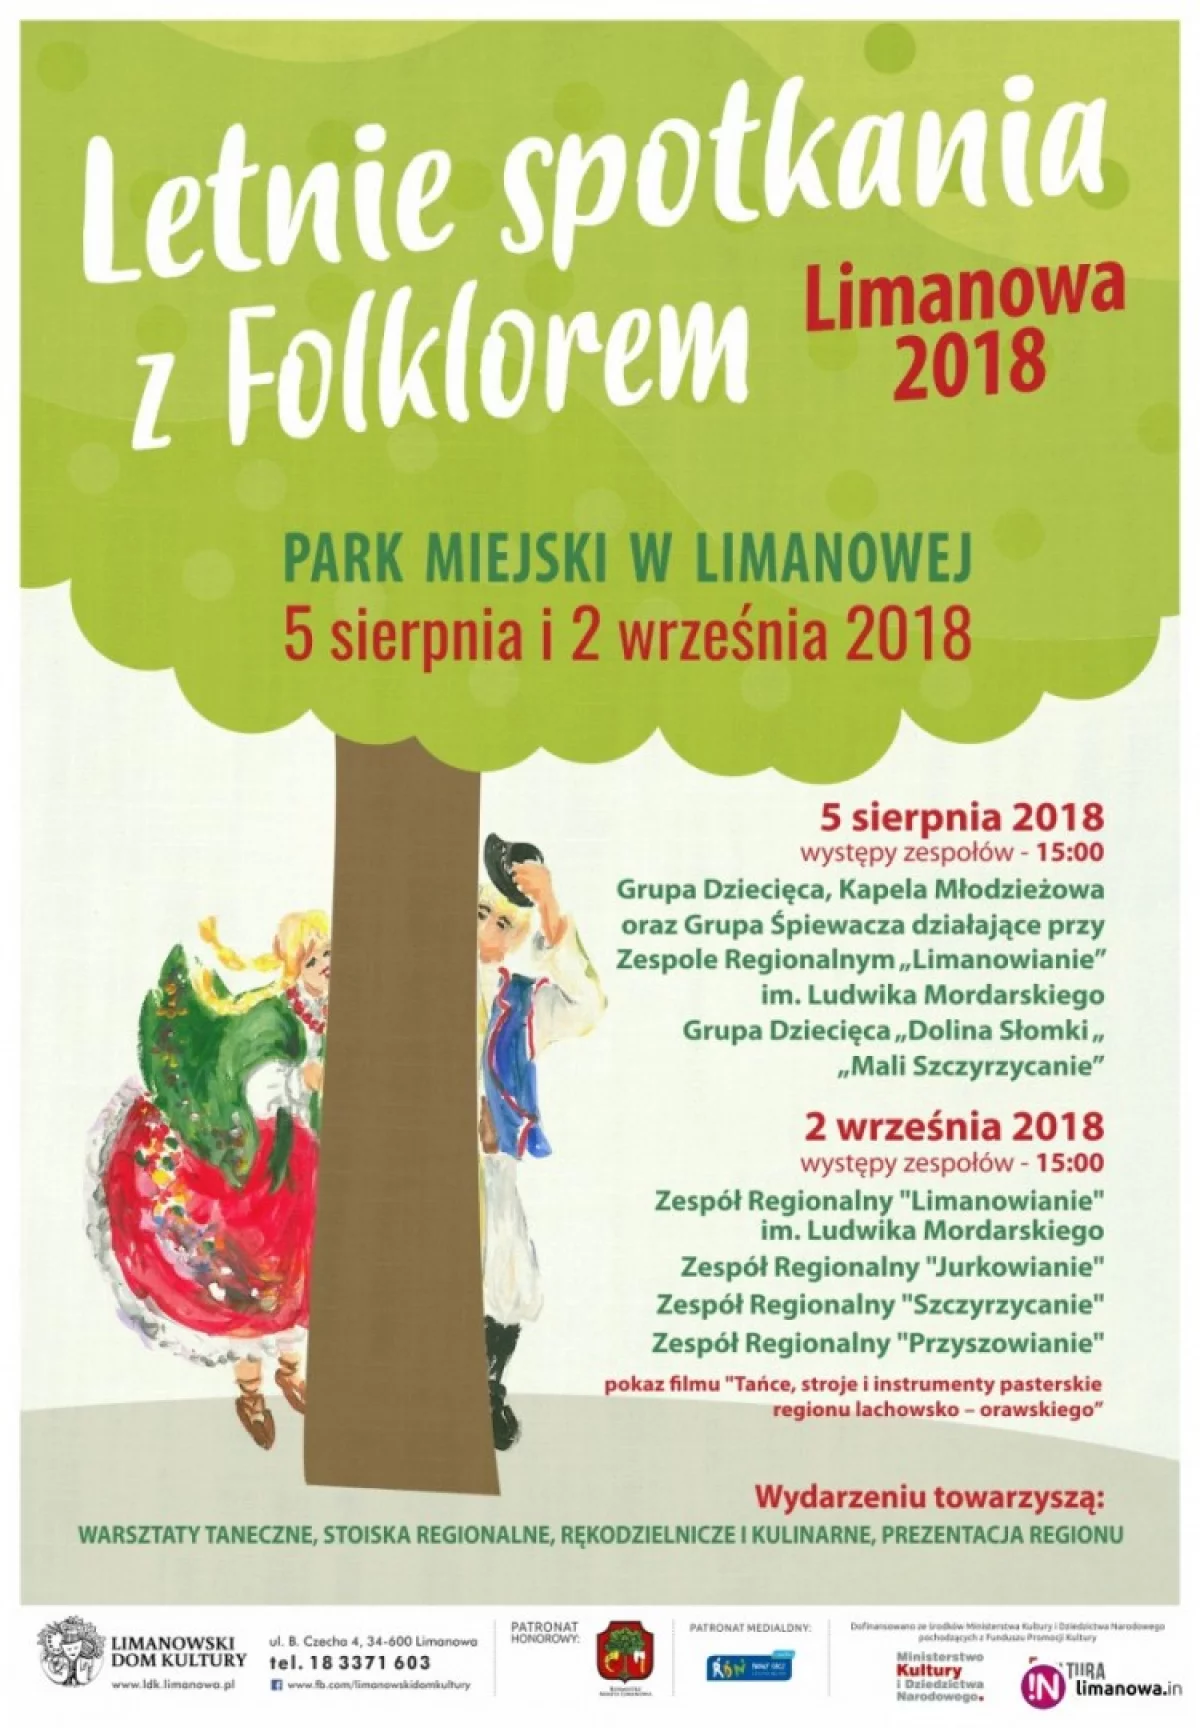 Letnie Spotkania z Folklorem - Limanowa 2018 już w najbliższą niedzielę!